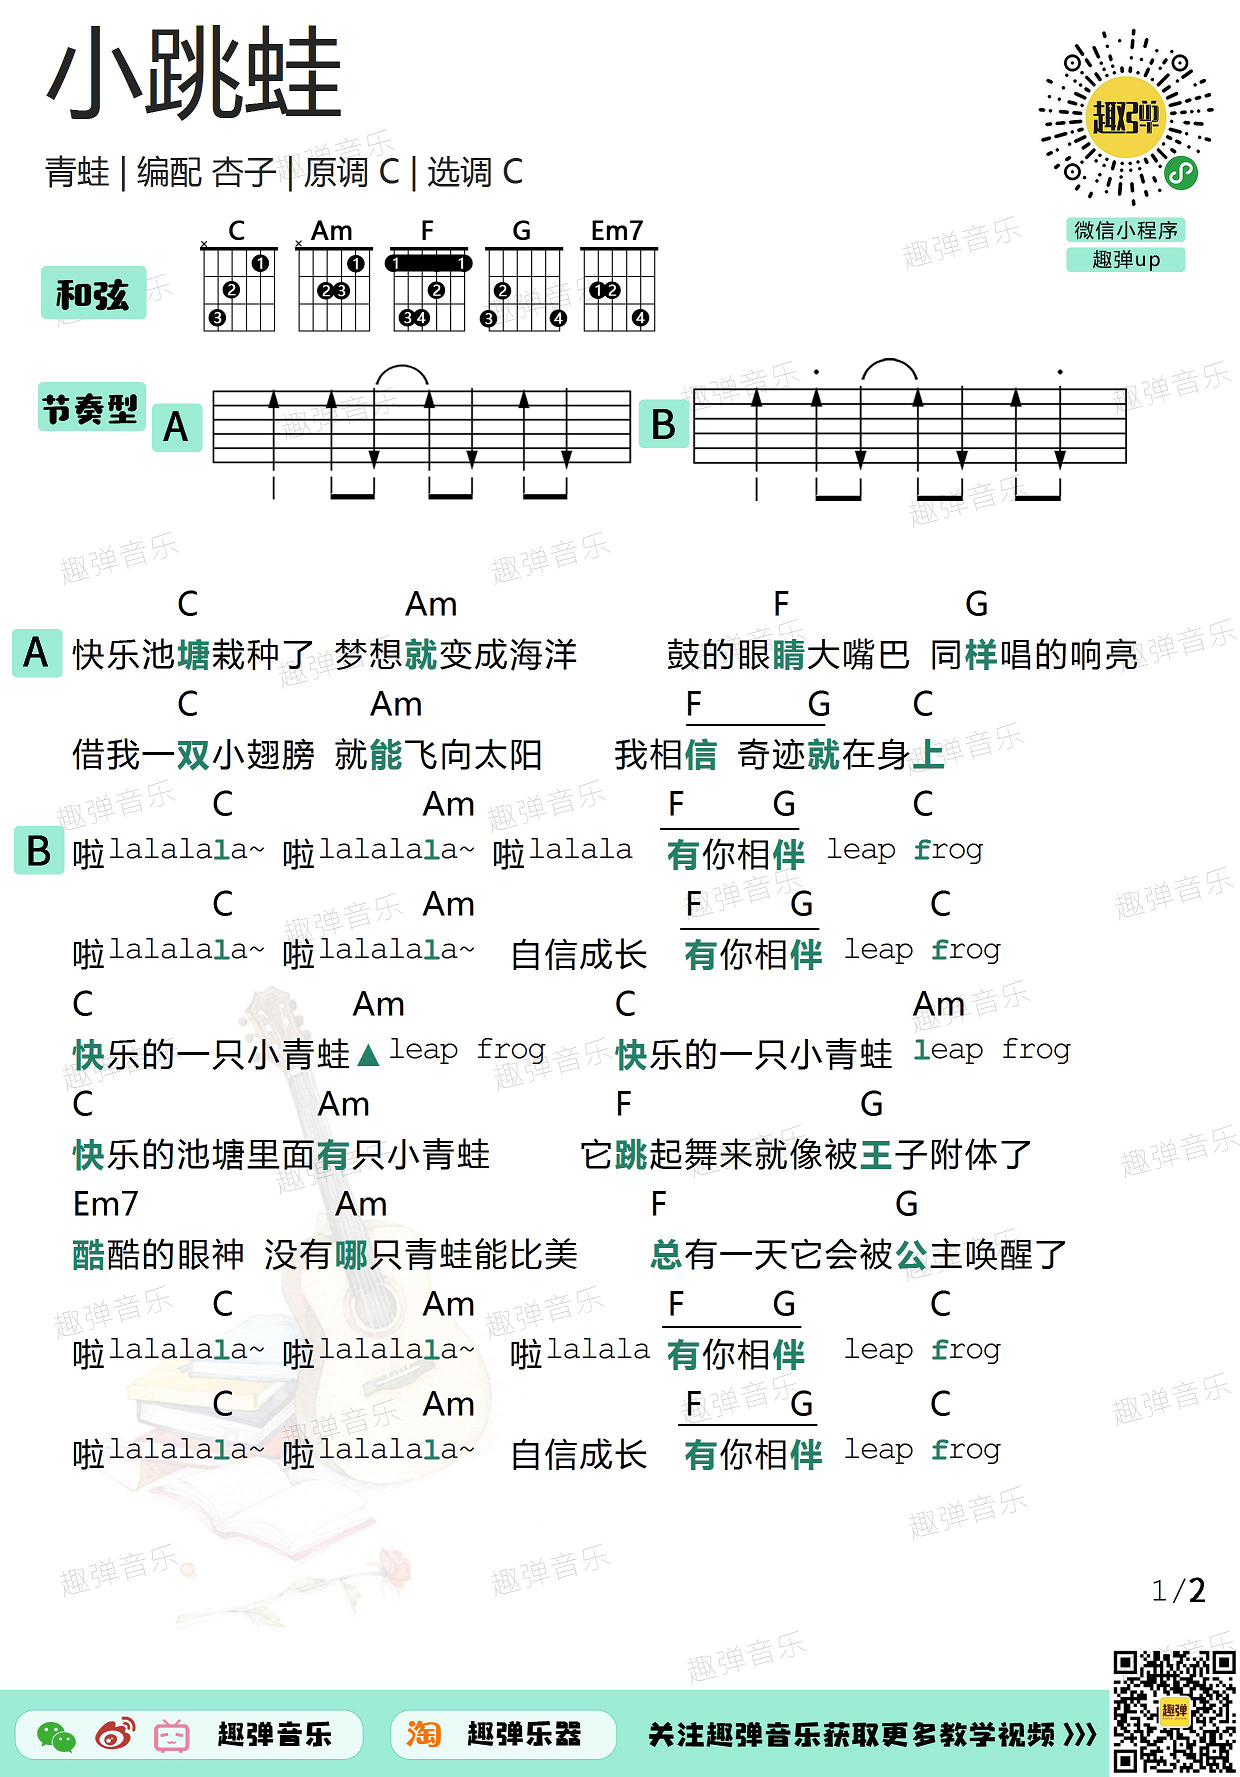 青蛙乐队《小跳蛙》吉他谱(C调)-Guitar Music Score